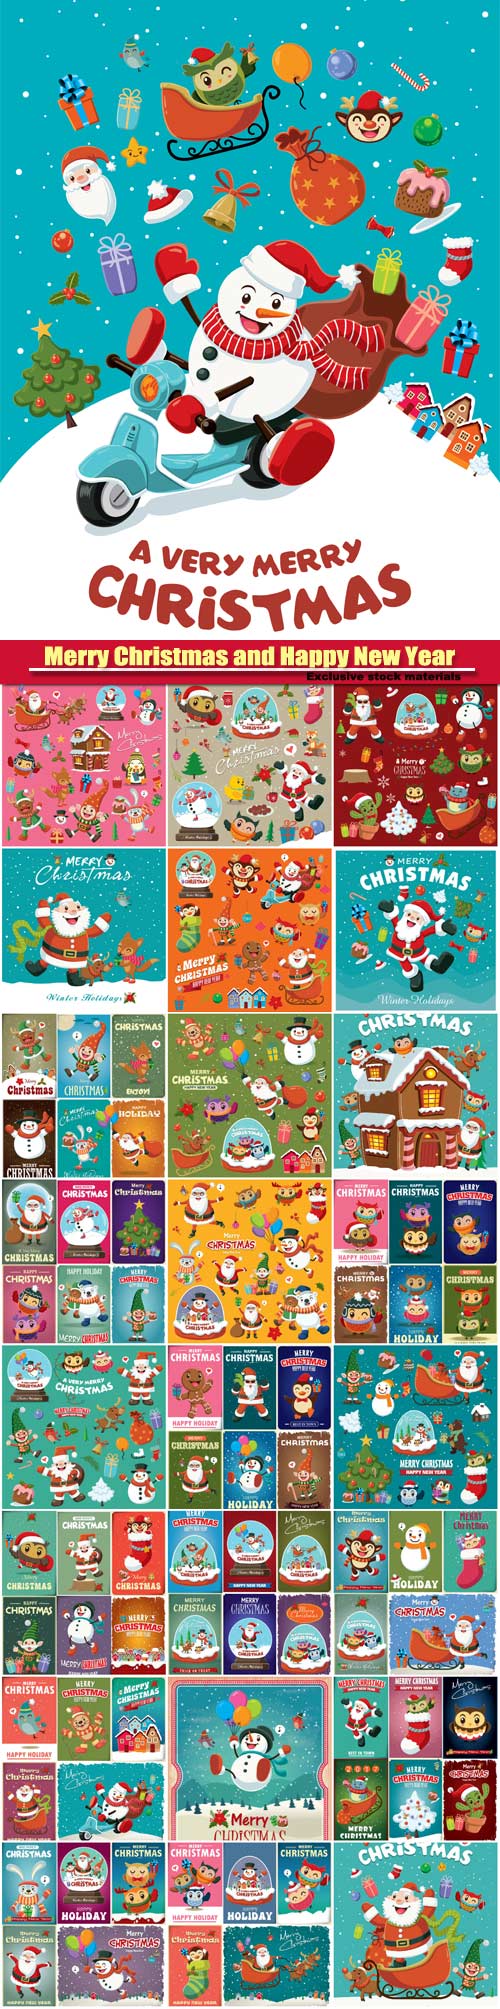 Vintage Christmas vector poster design set